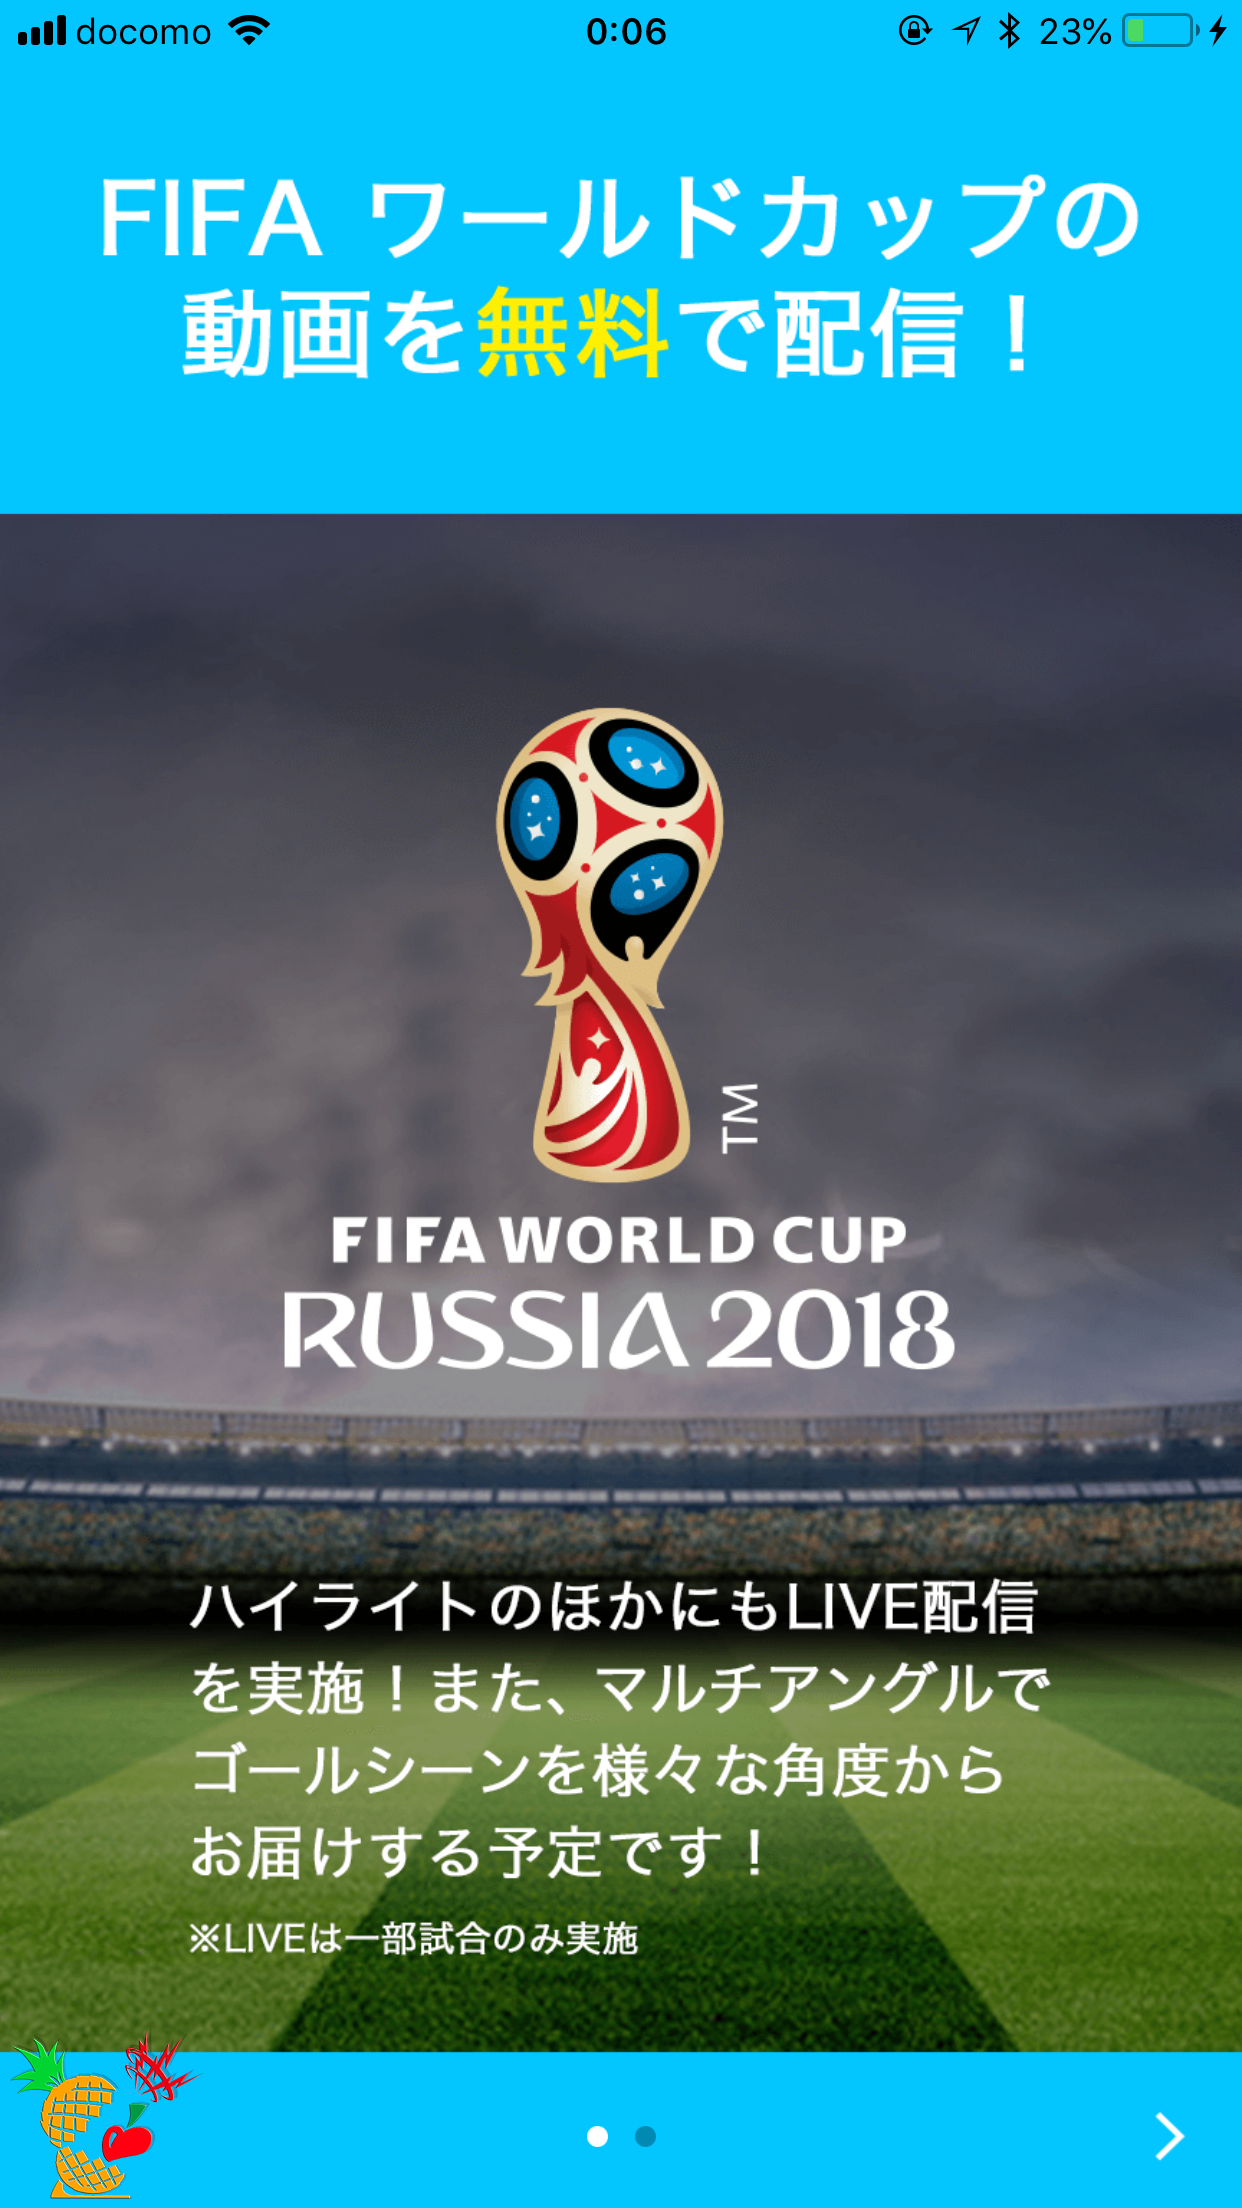 TVer（ティーバー）：「2018 FIFA ワールドカップ 特設ページ」